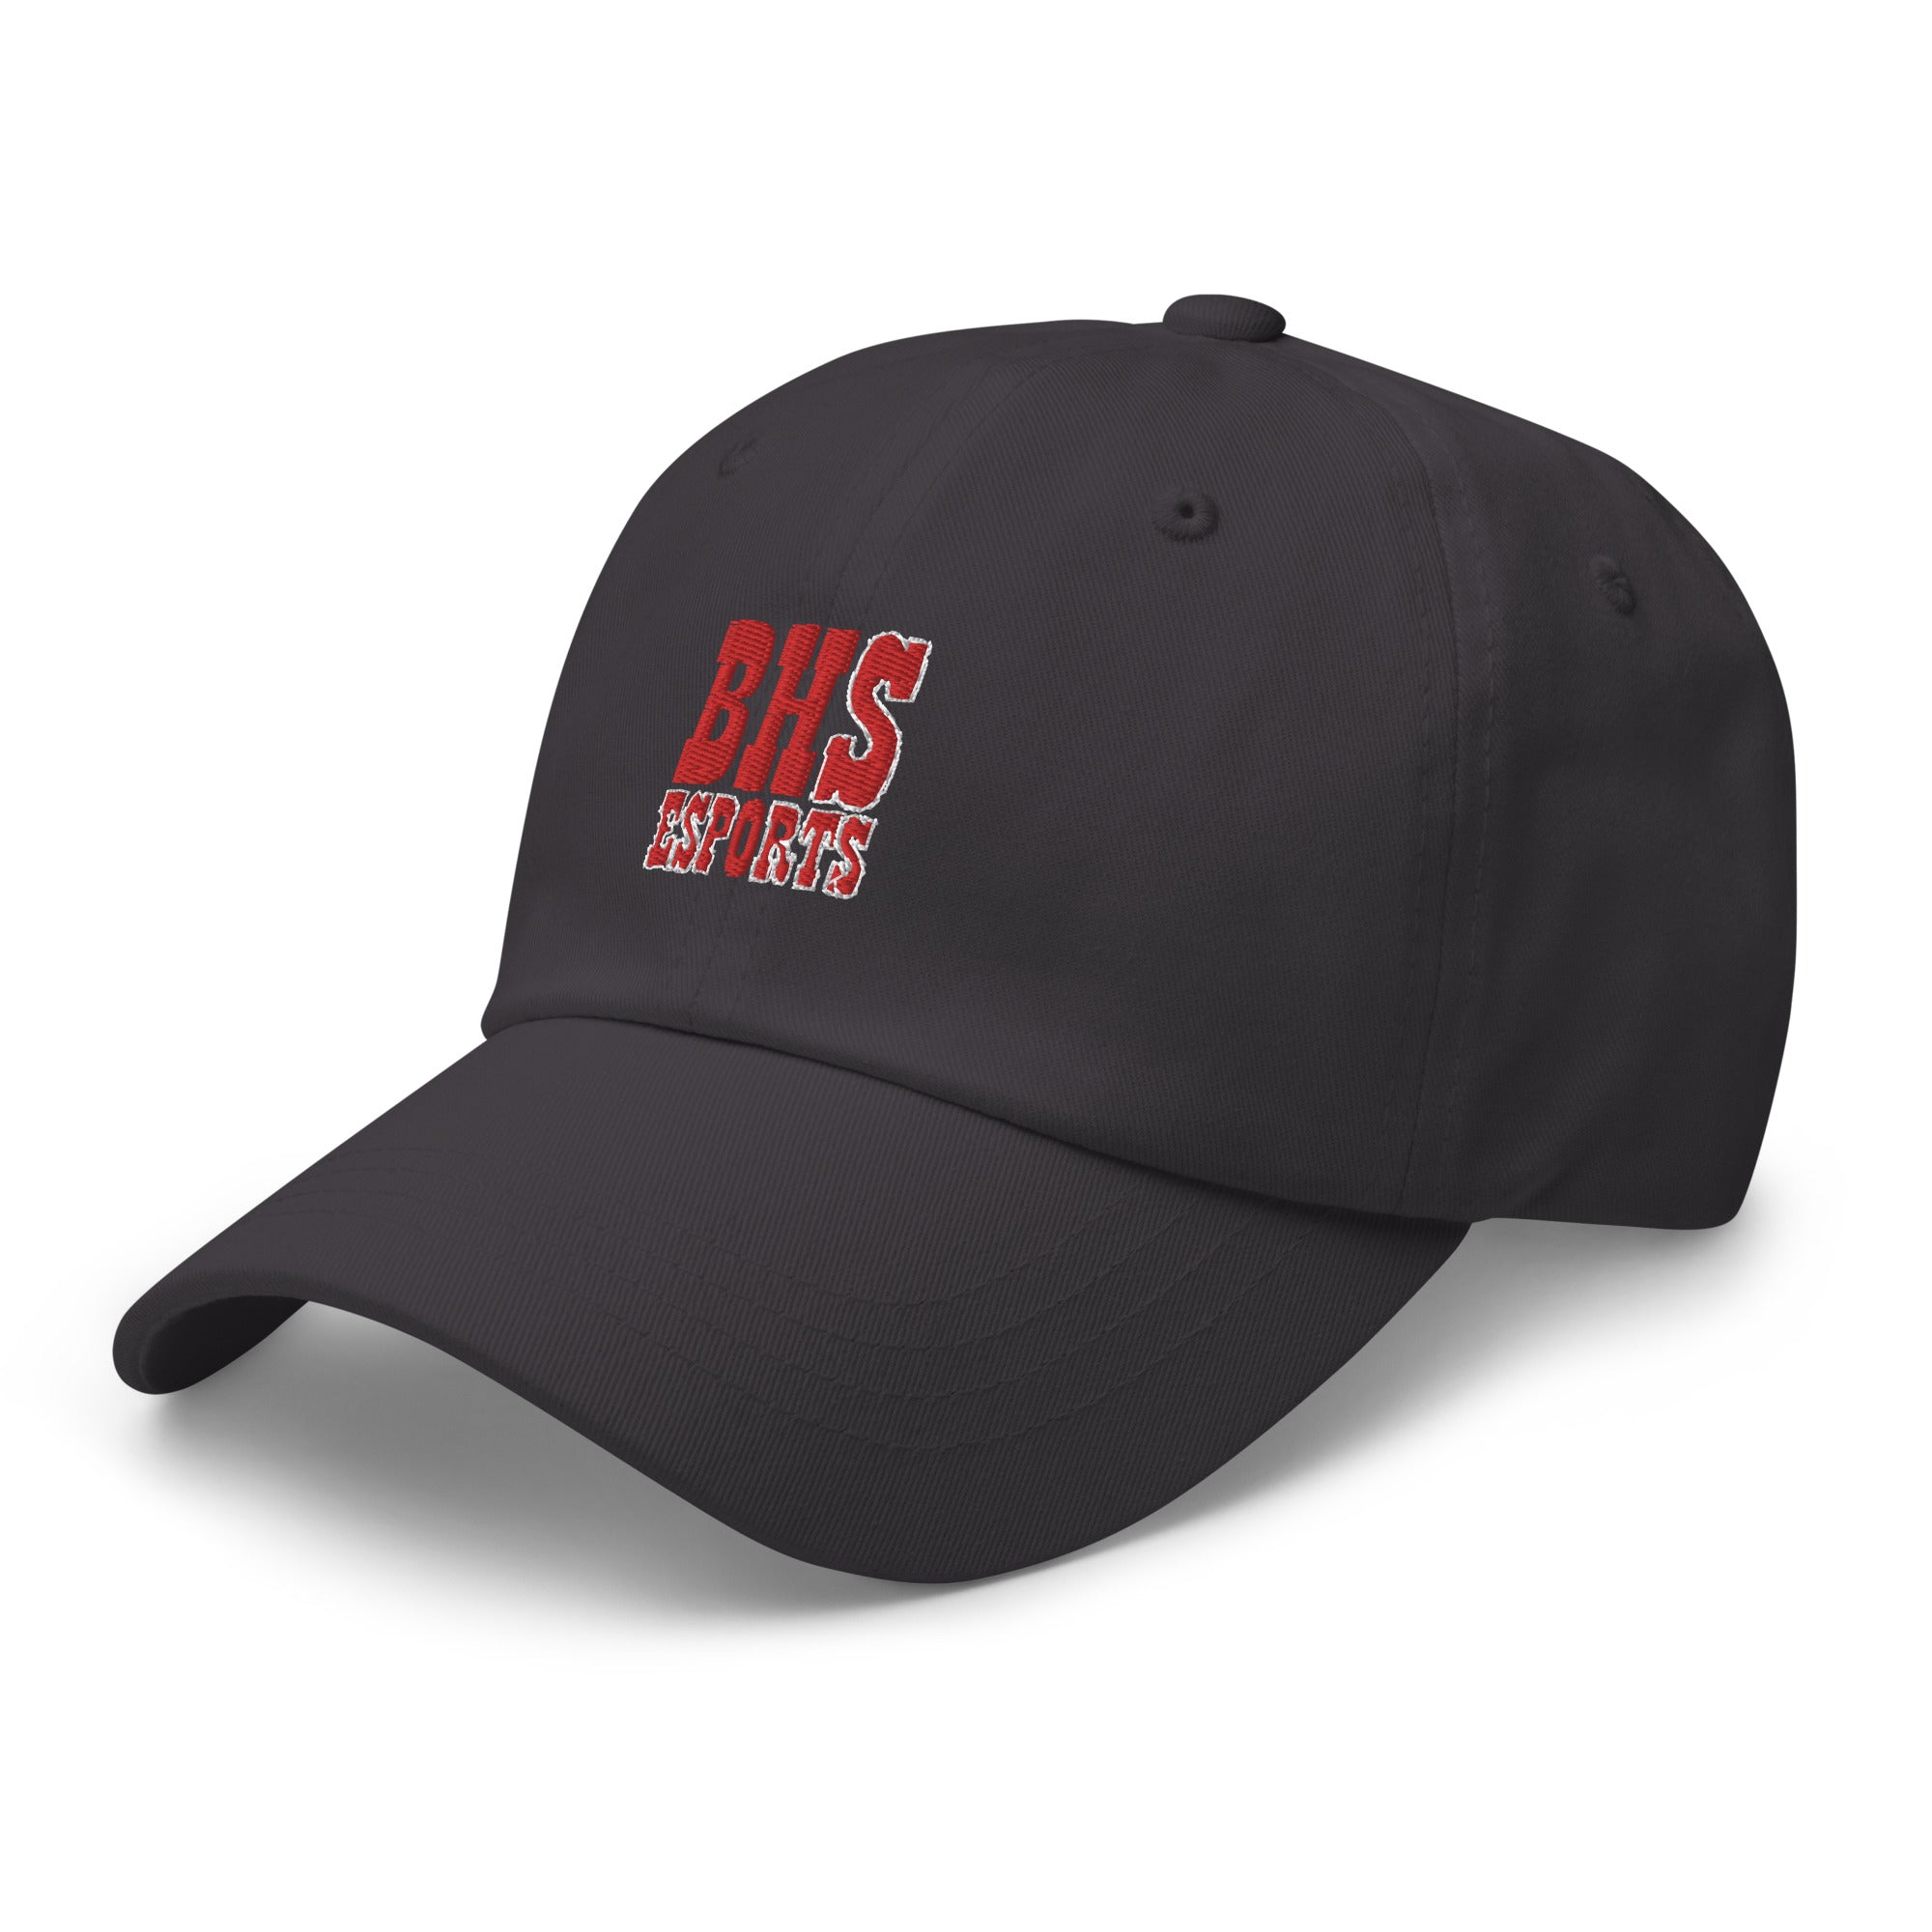 Bellevue High School | On Demand | Embroidered Dad Hat